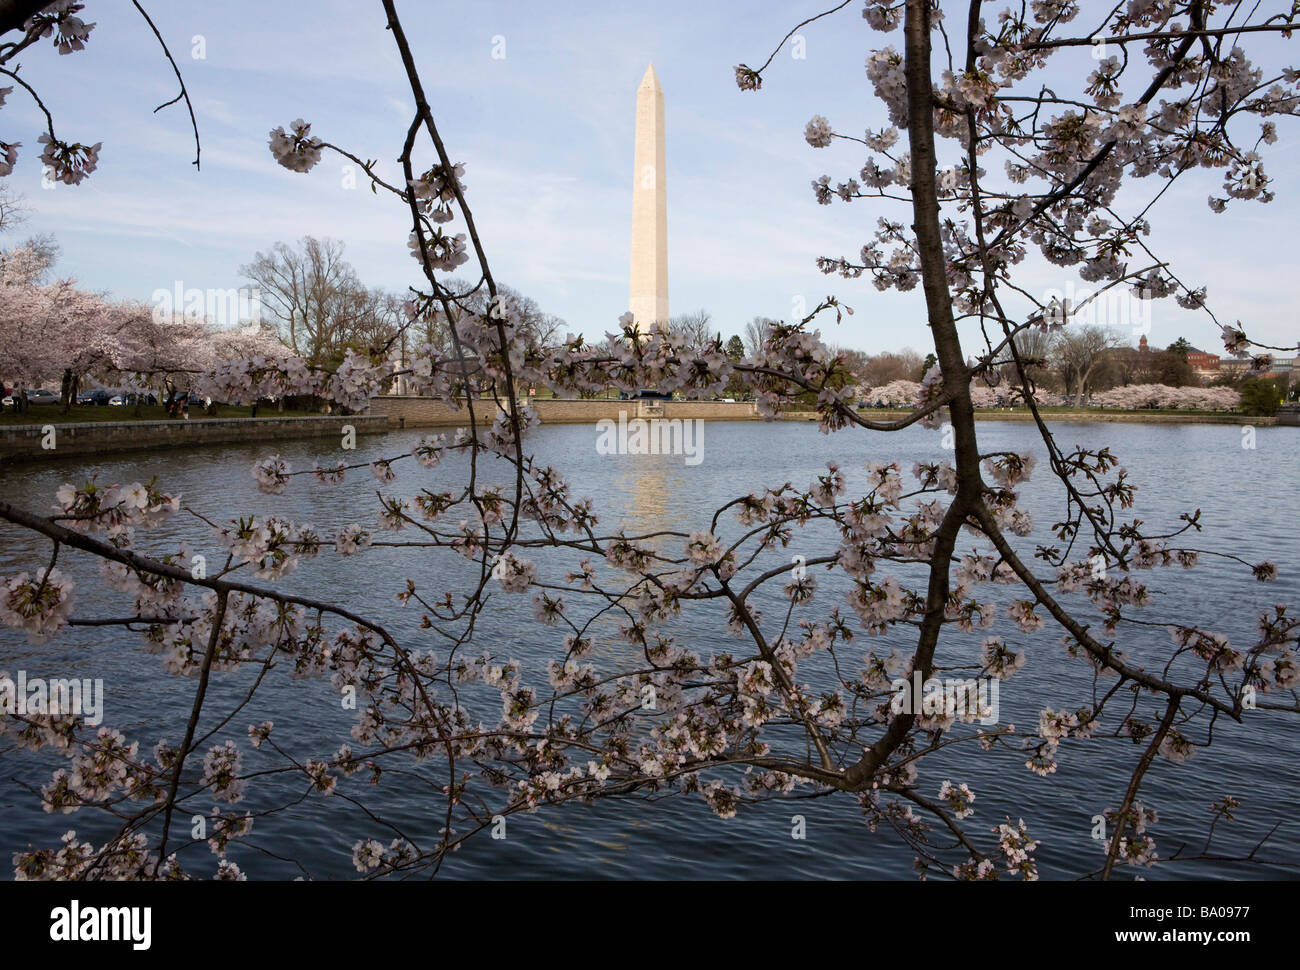 El 31 de marzo de 2009 Washington D C la floración de los Cerezos a lo largo de la Cuenca Tidal, justo al lado del National Mall Foto de stock